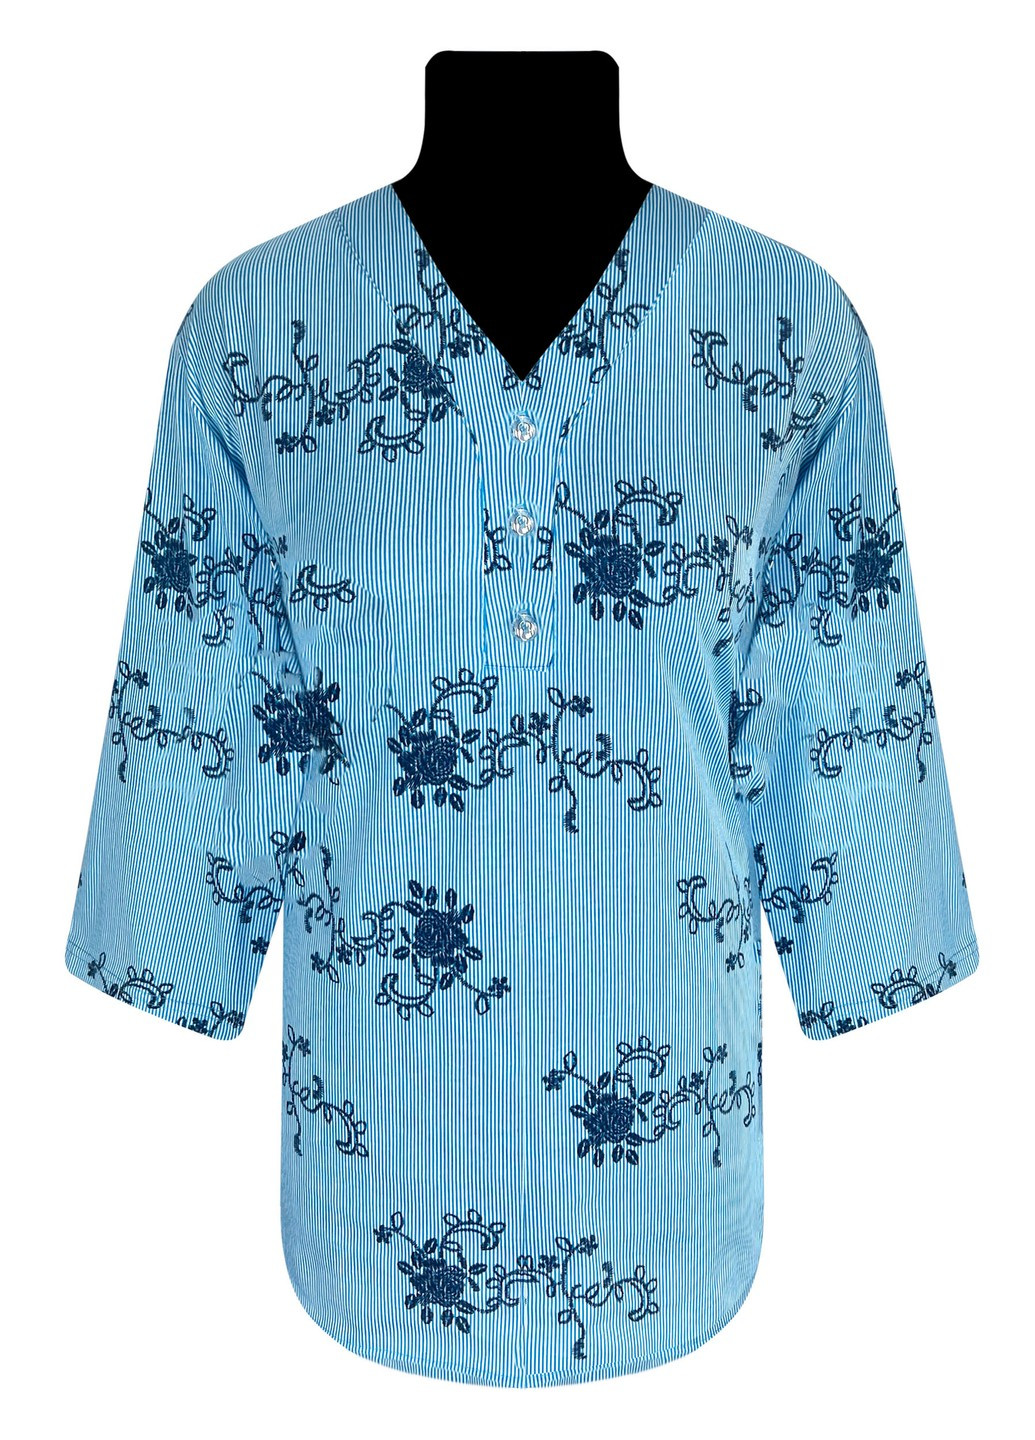 Голубая рубашка женская на пуговицах полоска Жемчужина стилей 4566